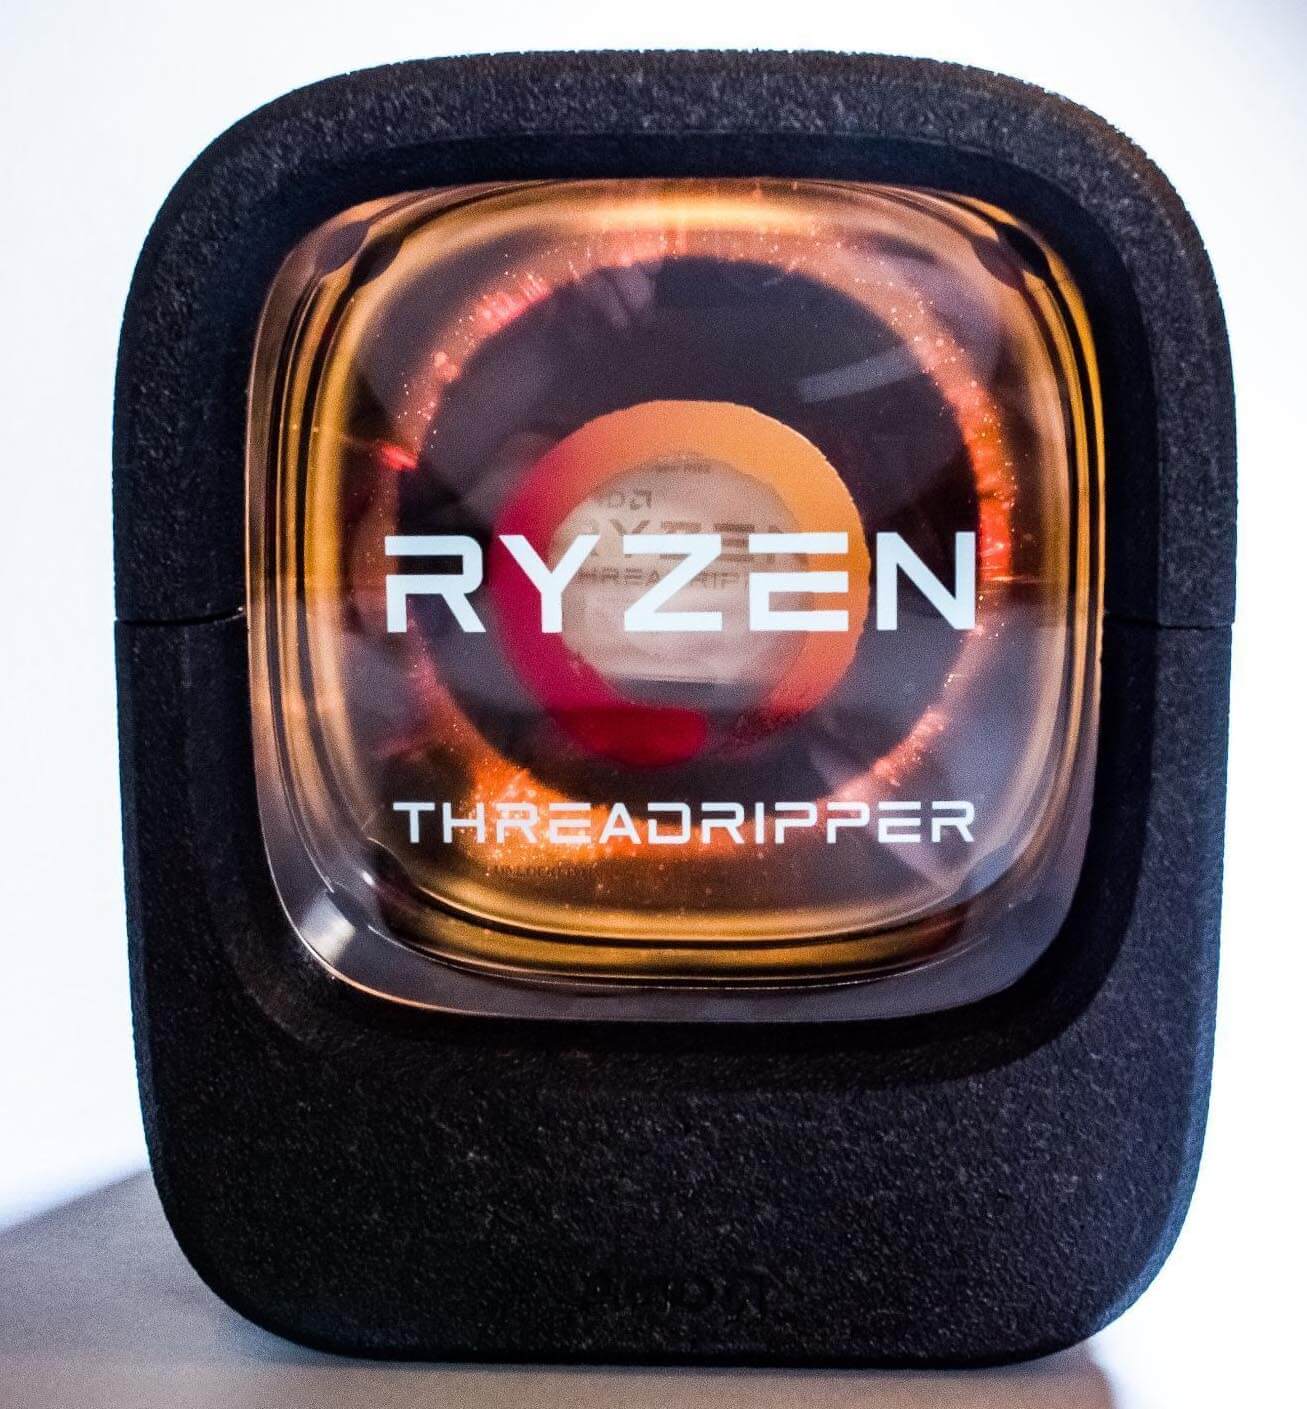 Ryzen Threadripper